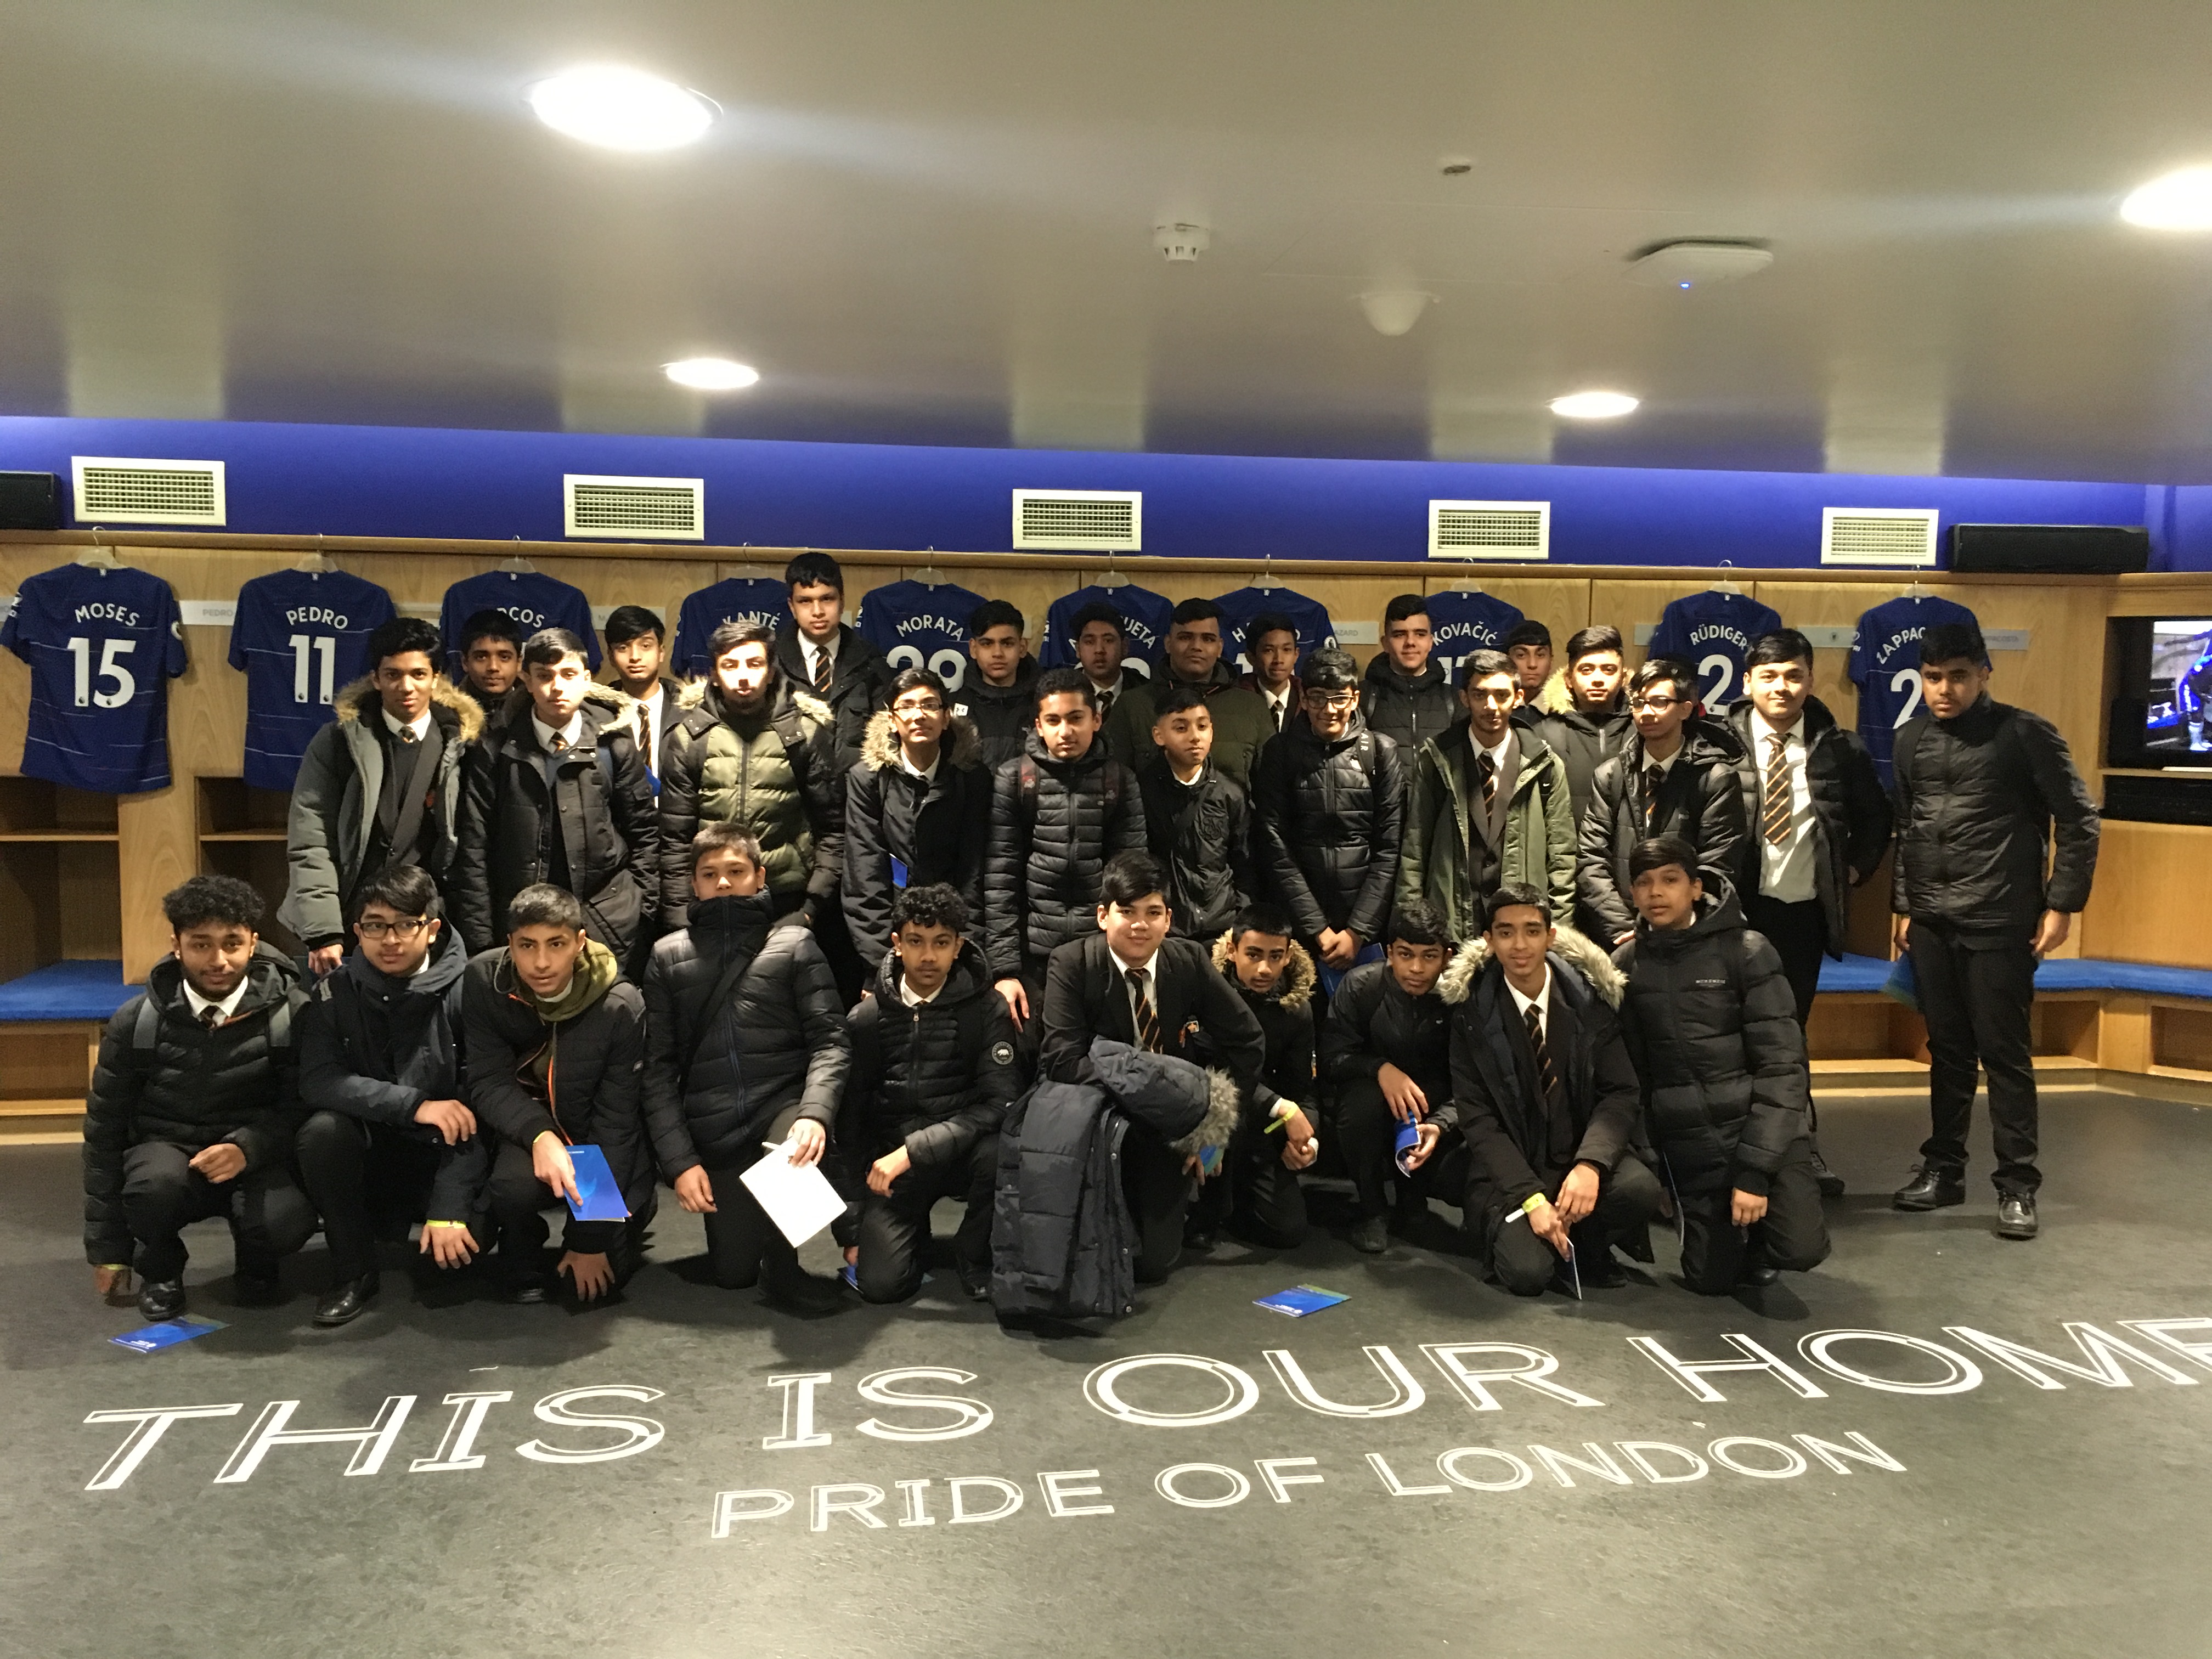 Business studies students visit Chelsea FC!